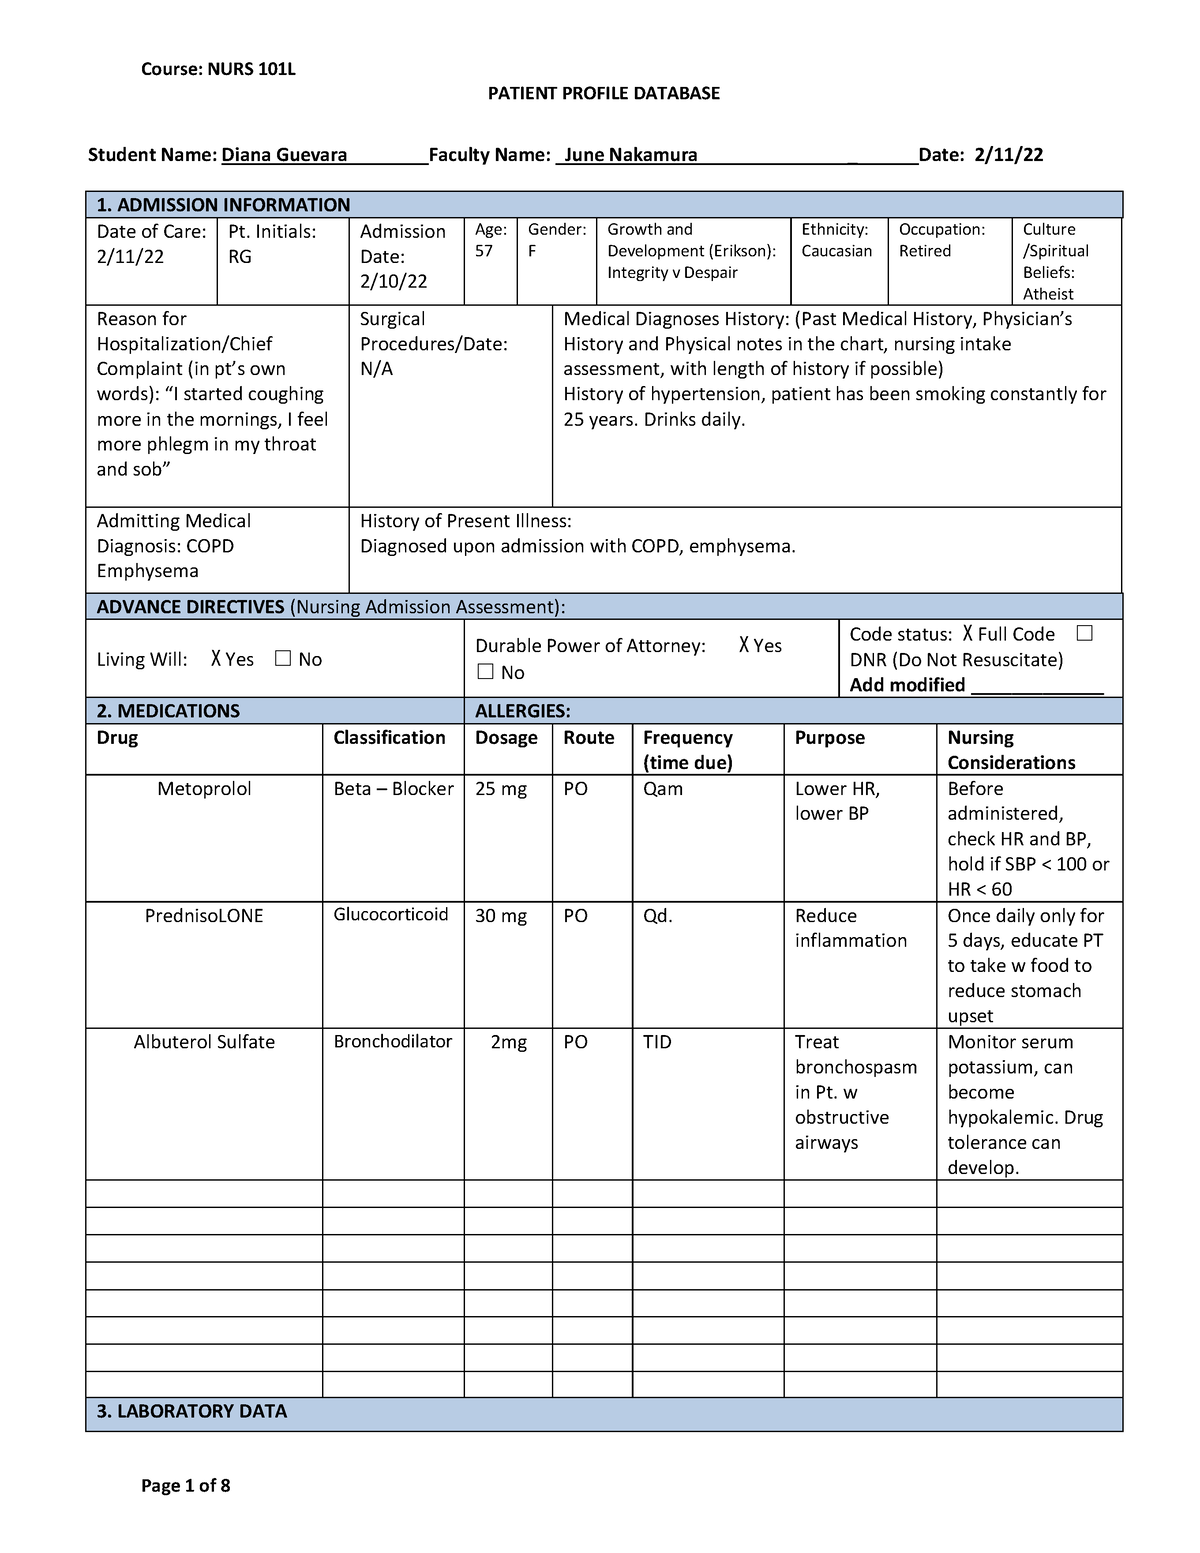 NURS 101L Patient Profile Database Form 1 - PATIENT PROFILE DATABASE ...